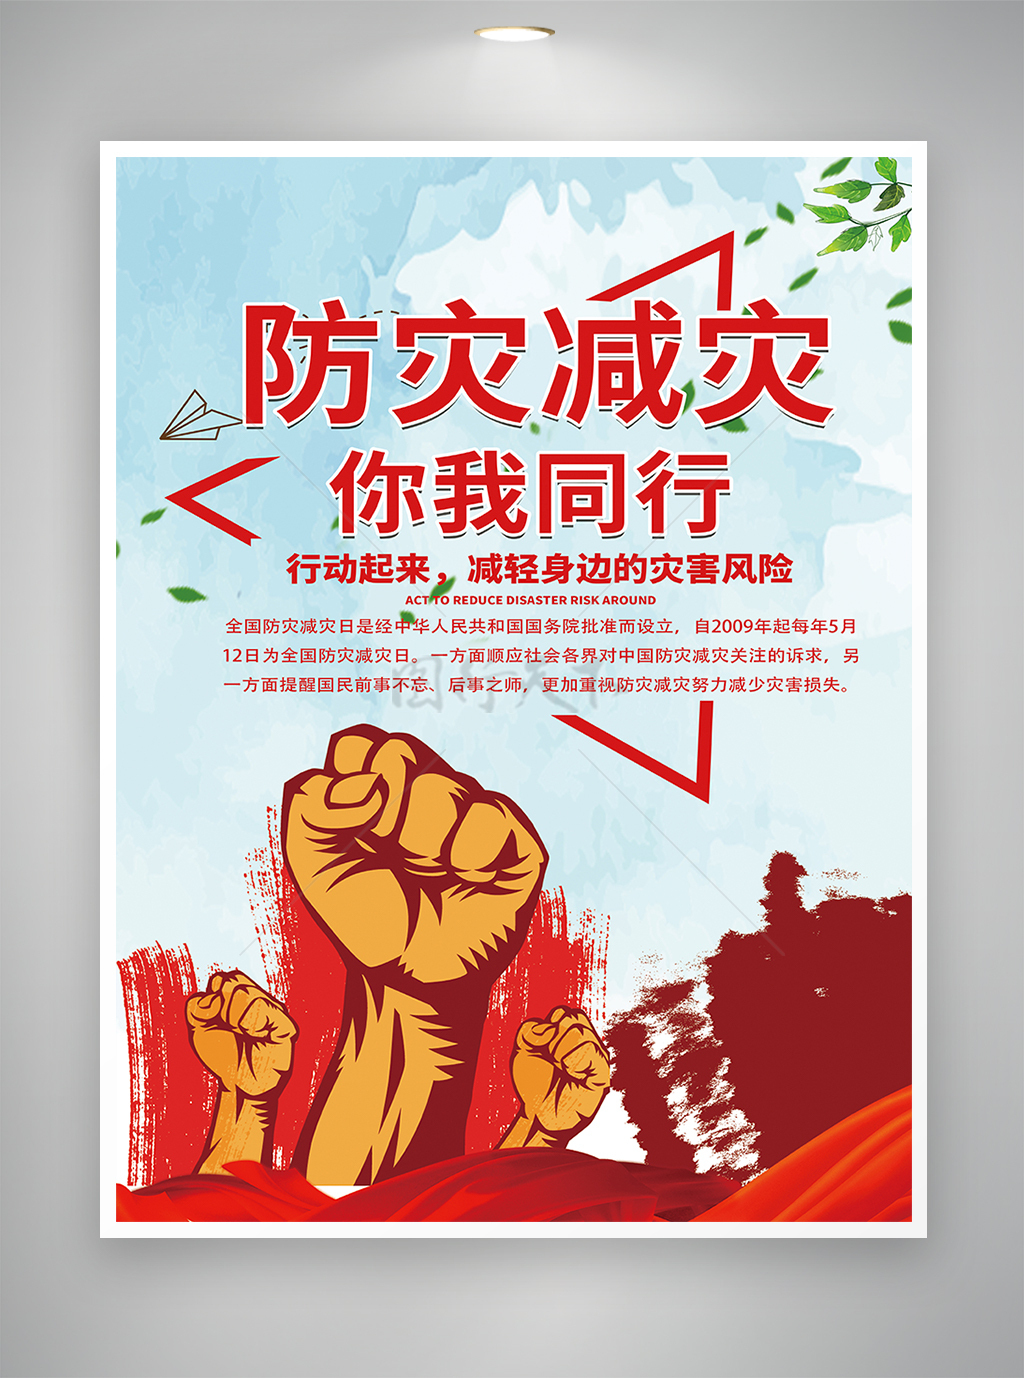 防灾减灾日推广宣传公益海报